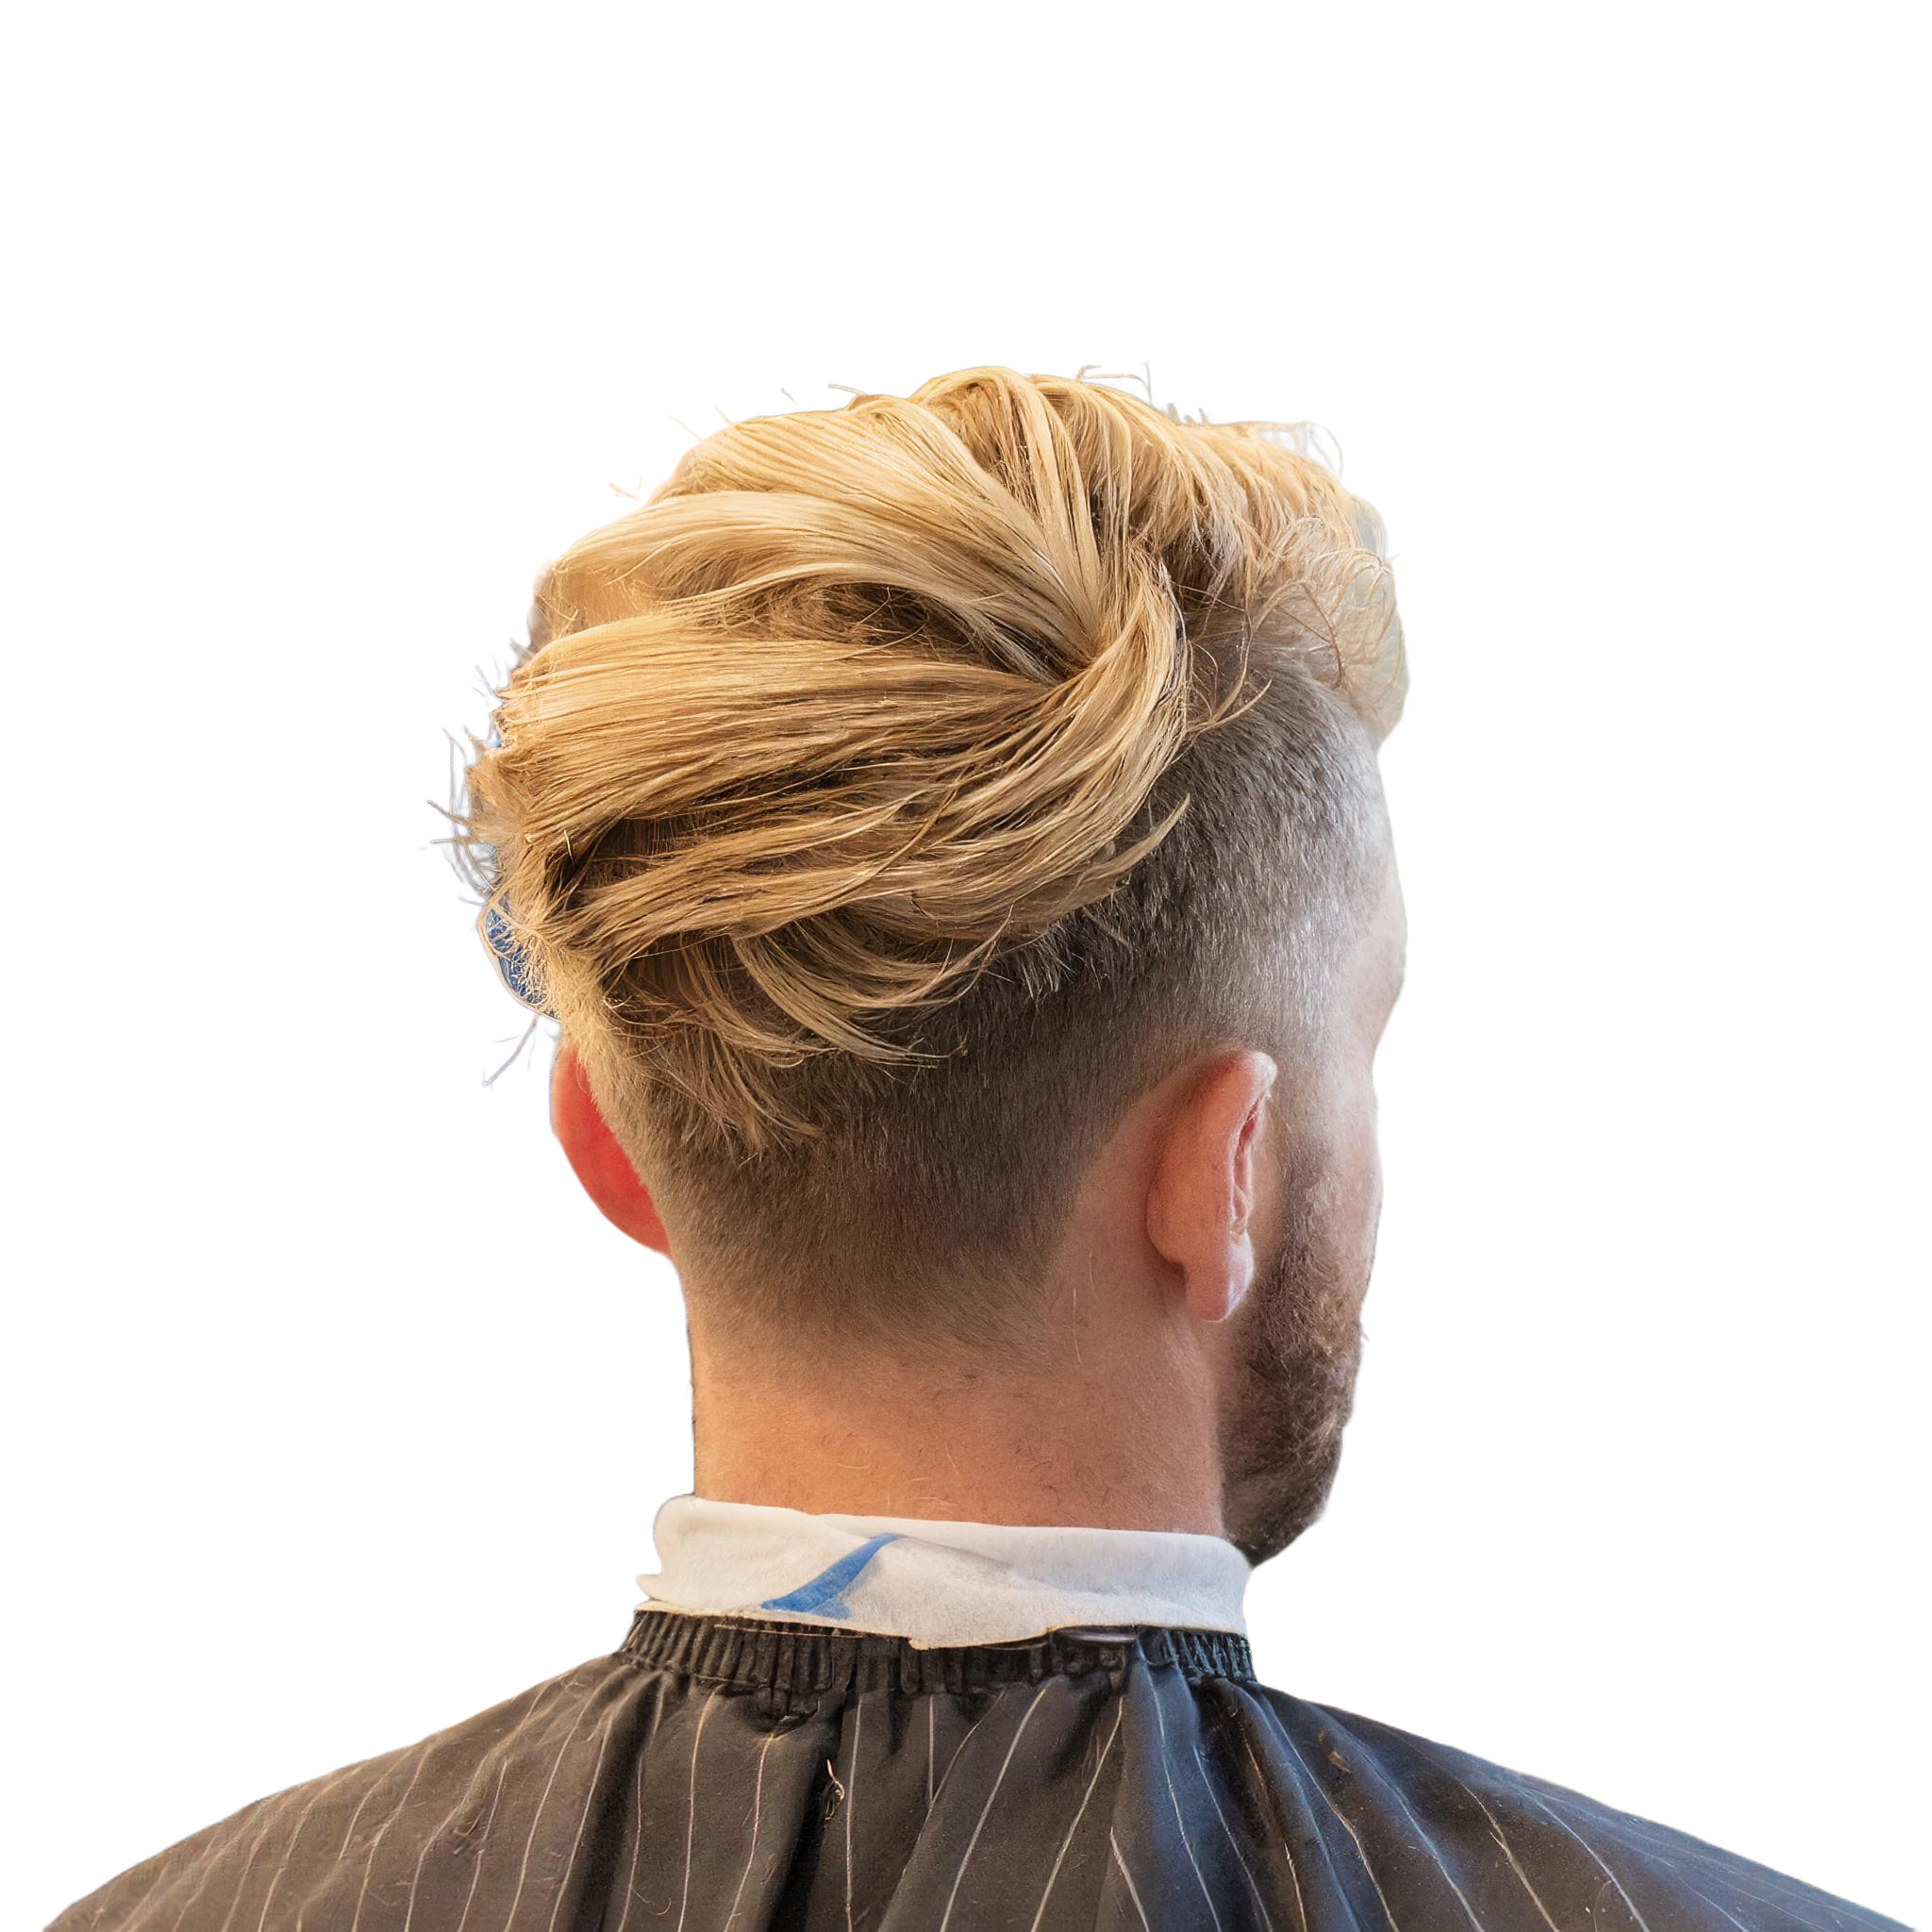 Rückansicht eines Mannes mit modernem Haarschnitt, der durch kurze Seiten und längere, nach hinten gestylte blonde Haare charakterisiert ist, vor einem weißen Hintergrund. Er trägt einen Friseurumhang mit sichtbaren Haarschneidespuren.